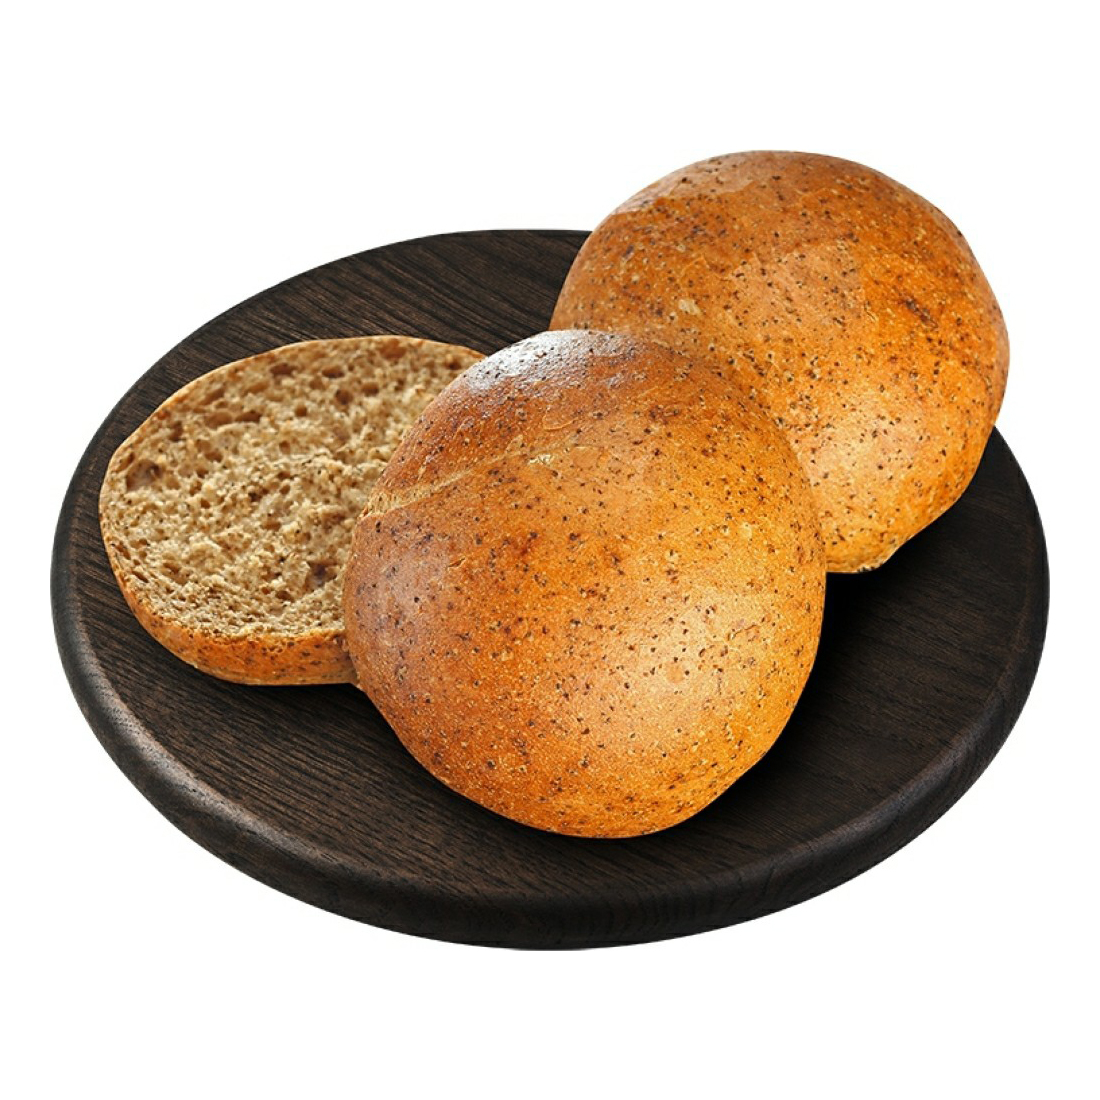 Булочка Магнит бутербродная ржано-пшеничная 50 г